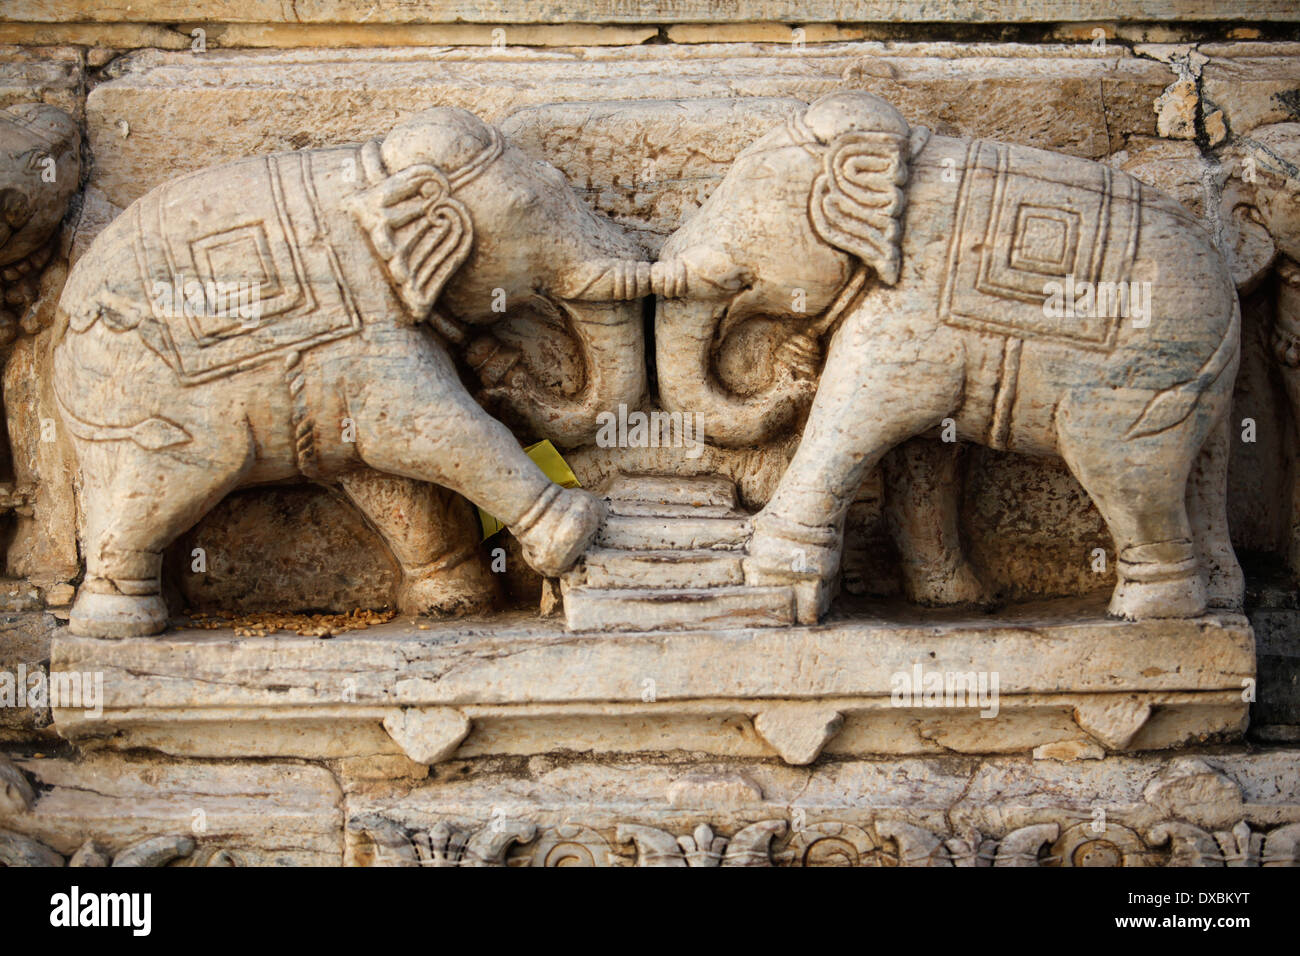 Détail des éléphants sculptés dans la pierre à l'intérieur de la 'Udaipur Fort'. Le Rajasthan, Inde. Banque D'Images